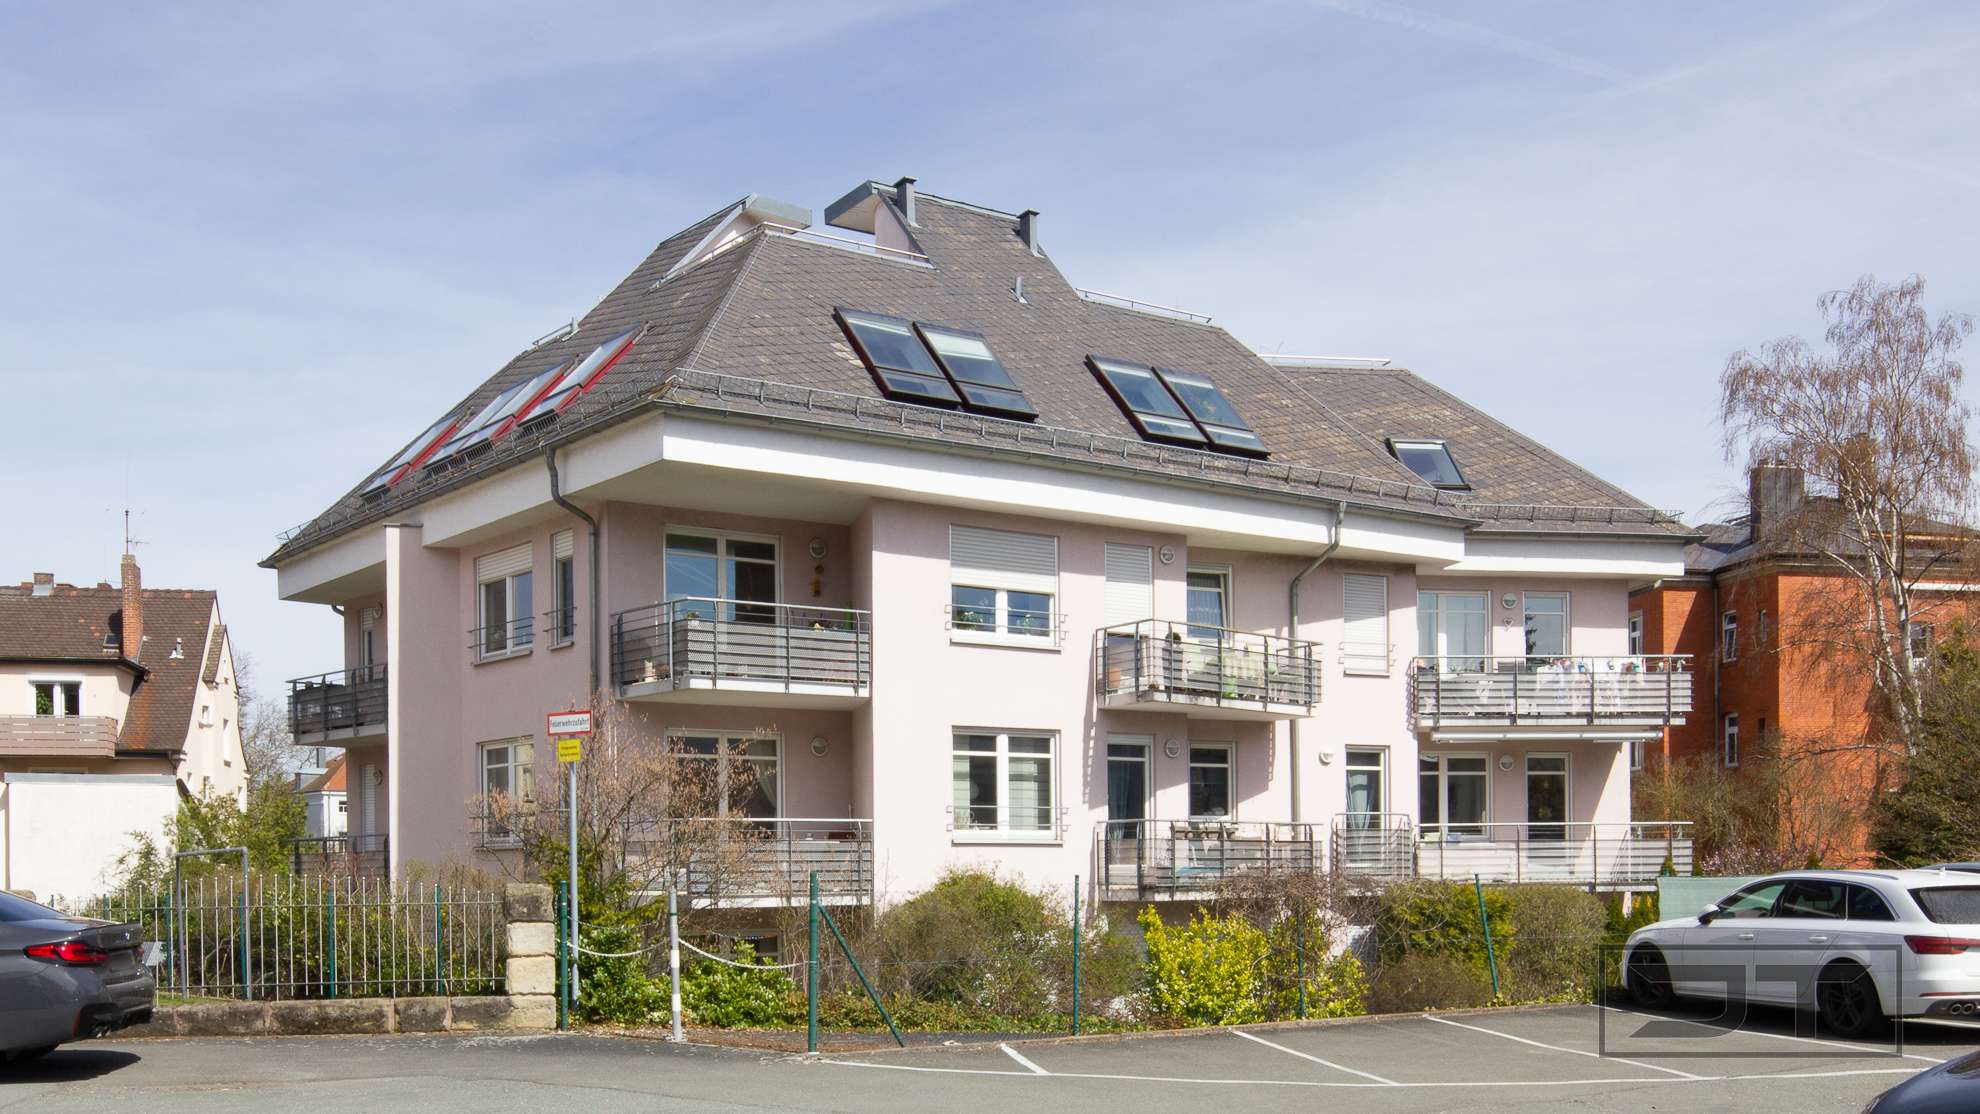 Top gepflegte 3-Zimmer-Wohnung mit Sonnenbalkon in zentraler Lage, ideal für Kapitalanleger!